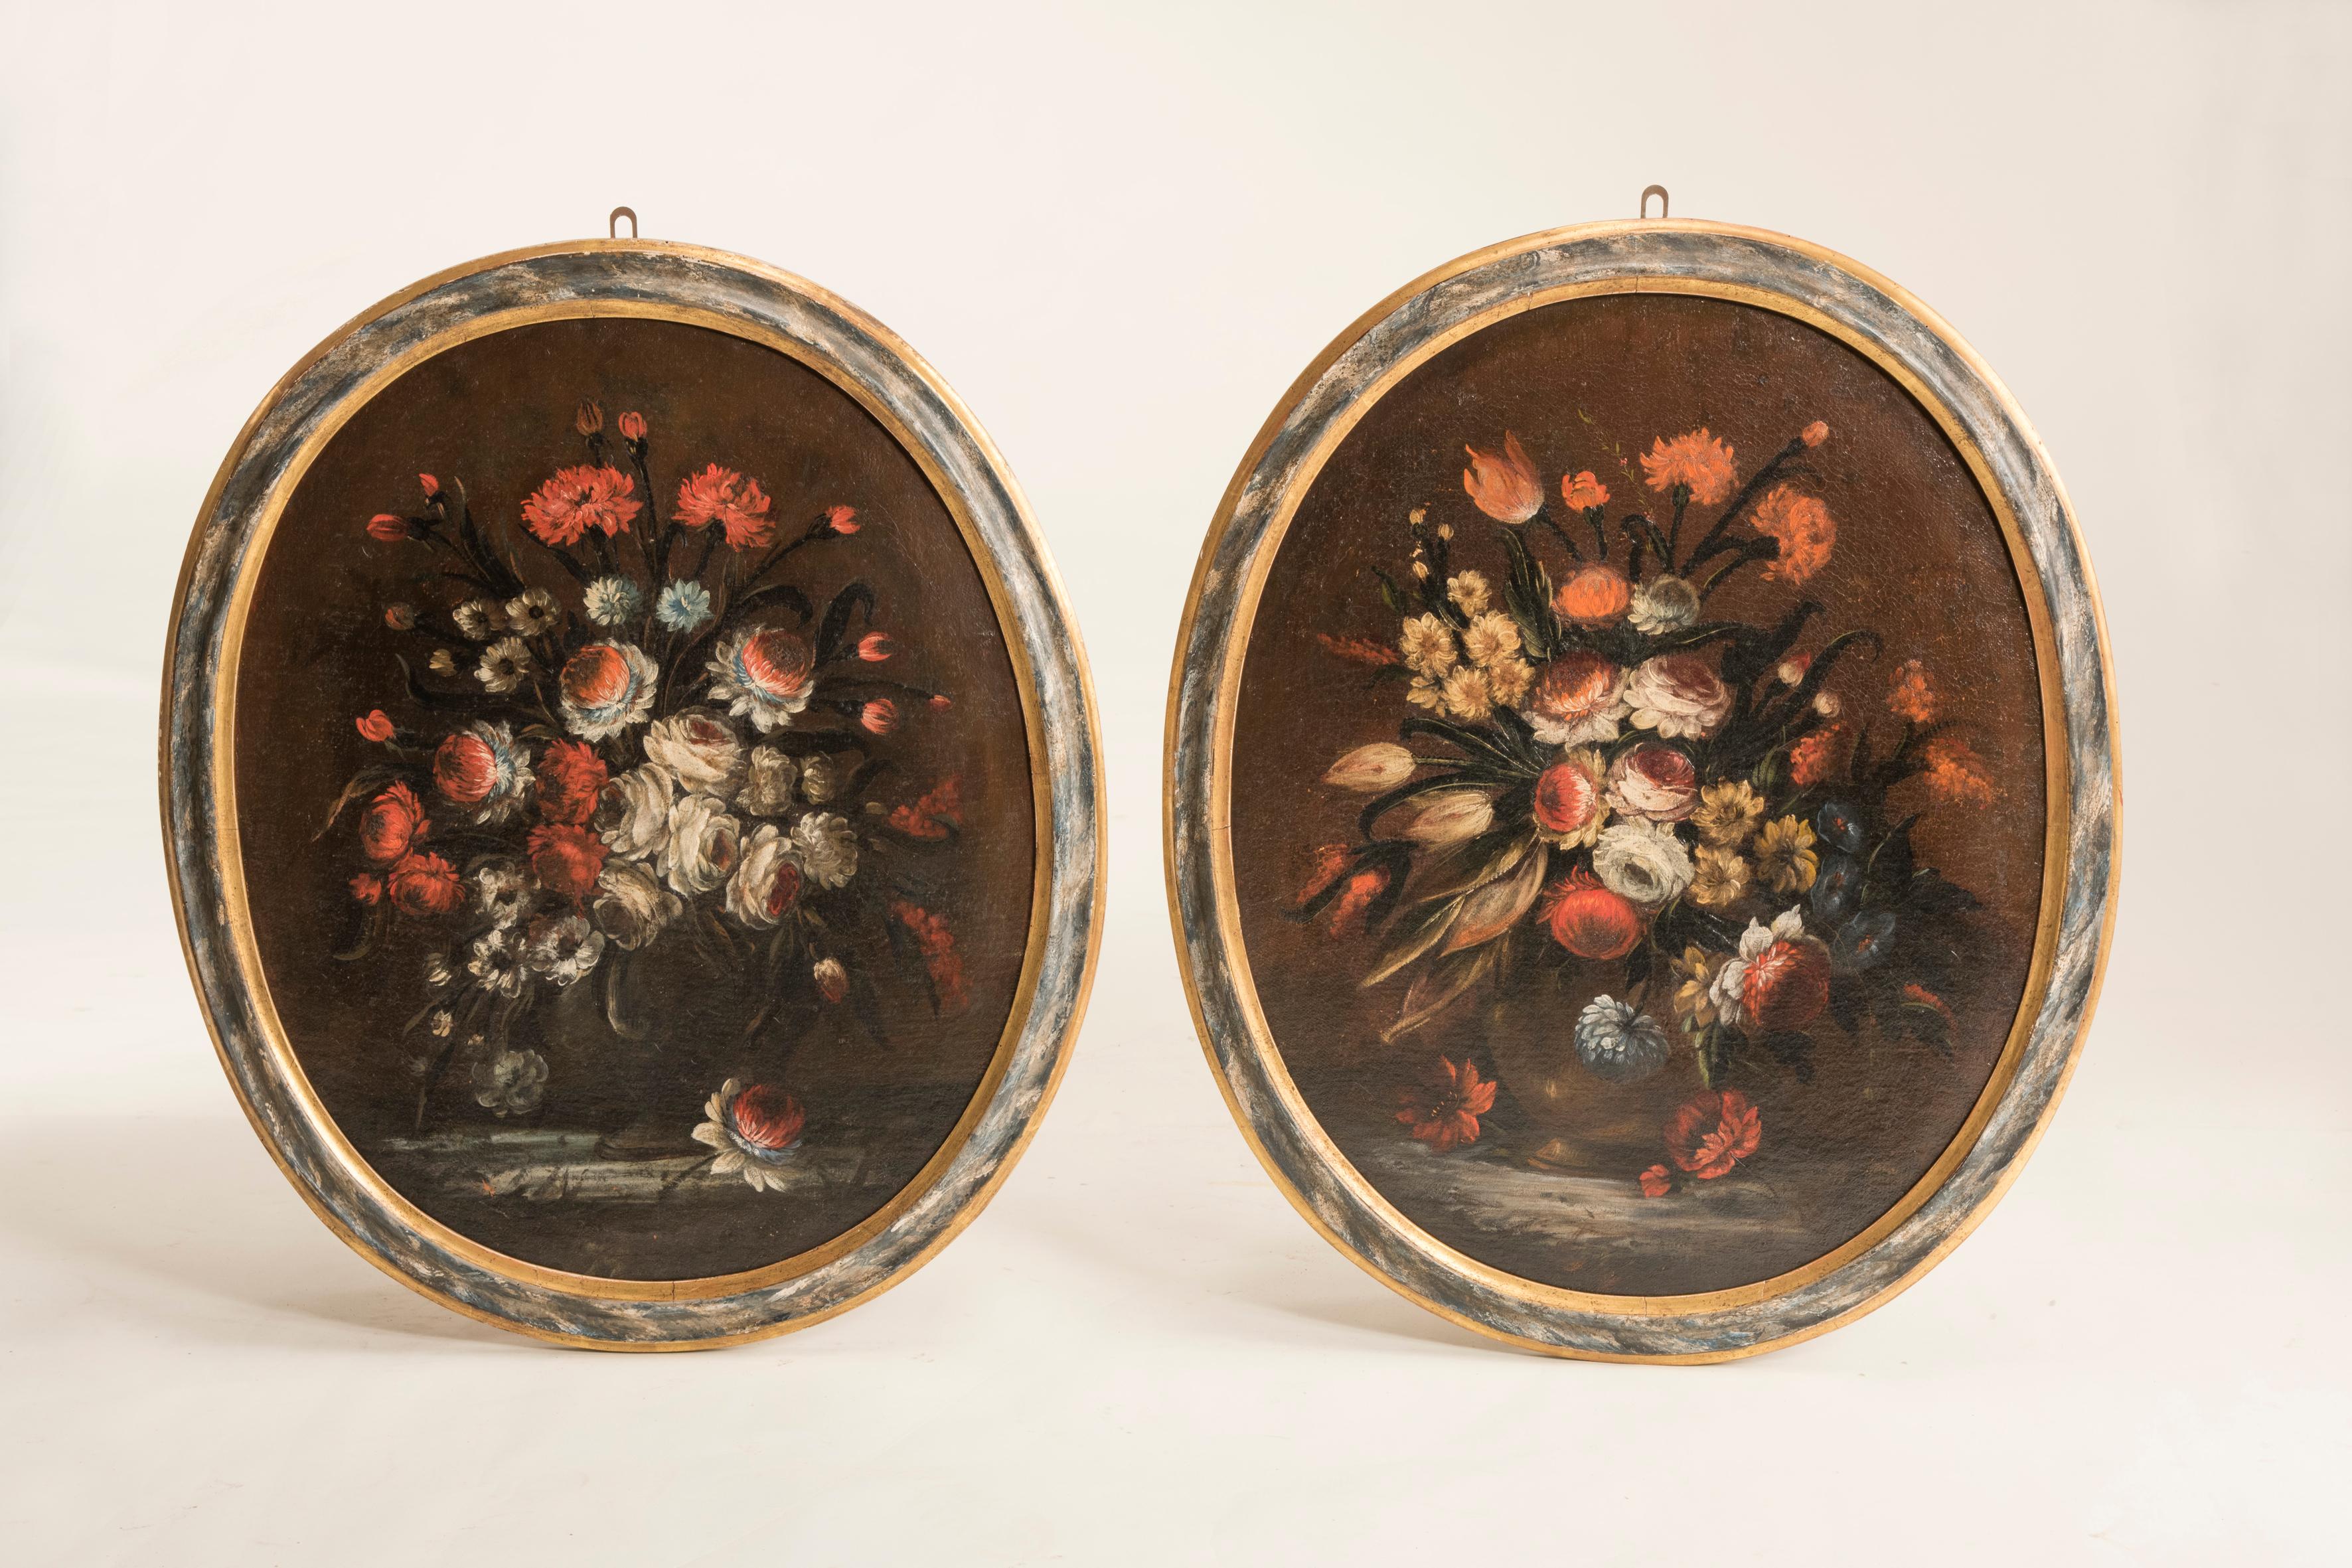 Fin du XVIIe-début du XVIIIe siècle : Nature morte de fleurs dans des cadres ovales laqués italiens, ensemble de deux tableaux.
Cadres Coeval en bois laqué.
Huile sur toile avec un fond sombre et des fleurs finement définies.
Restauration :